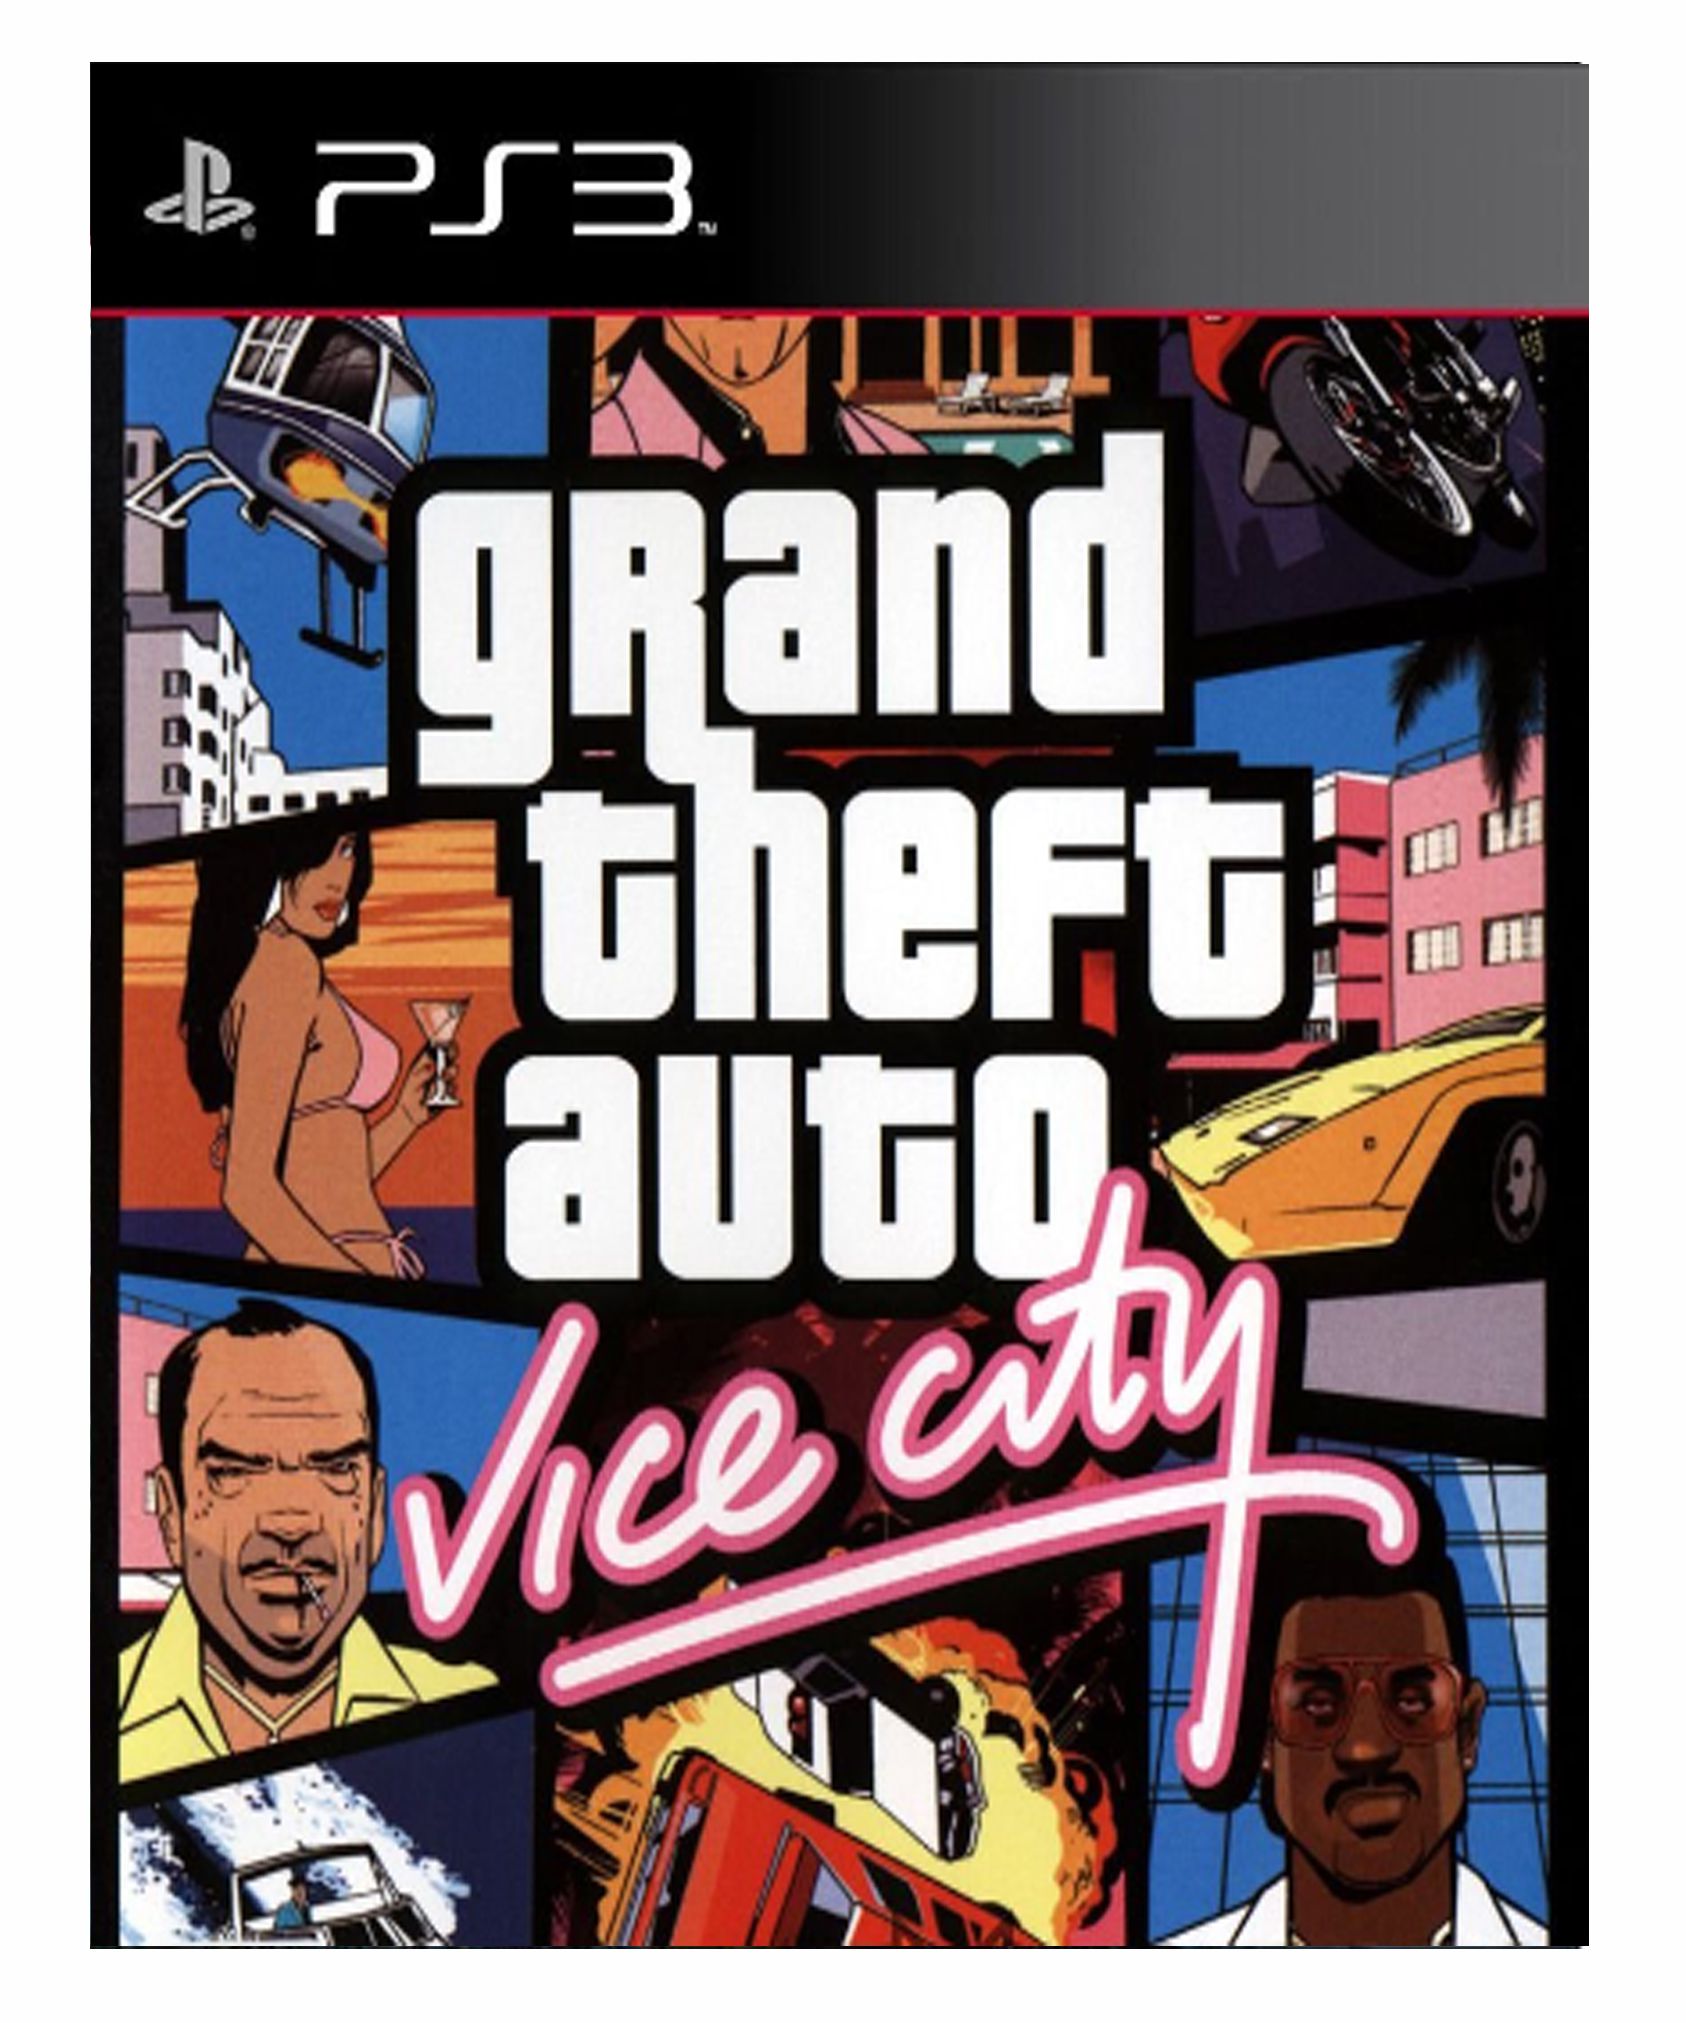 GTA Vice City (Clássico Ps2) Midia Digital Ps3 - WR Games Os melhores jogos  estão aqui!!!!